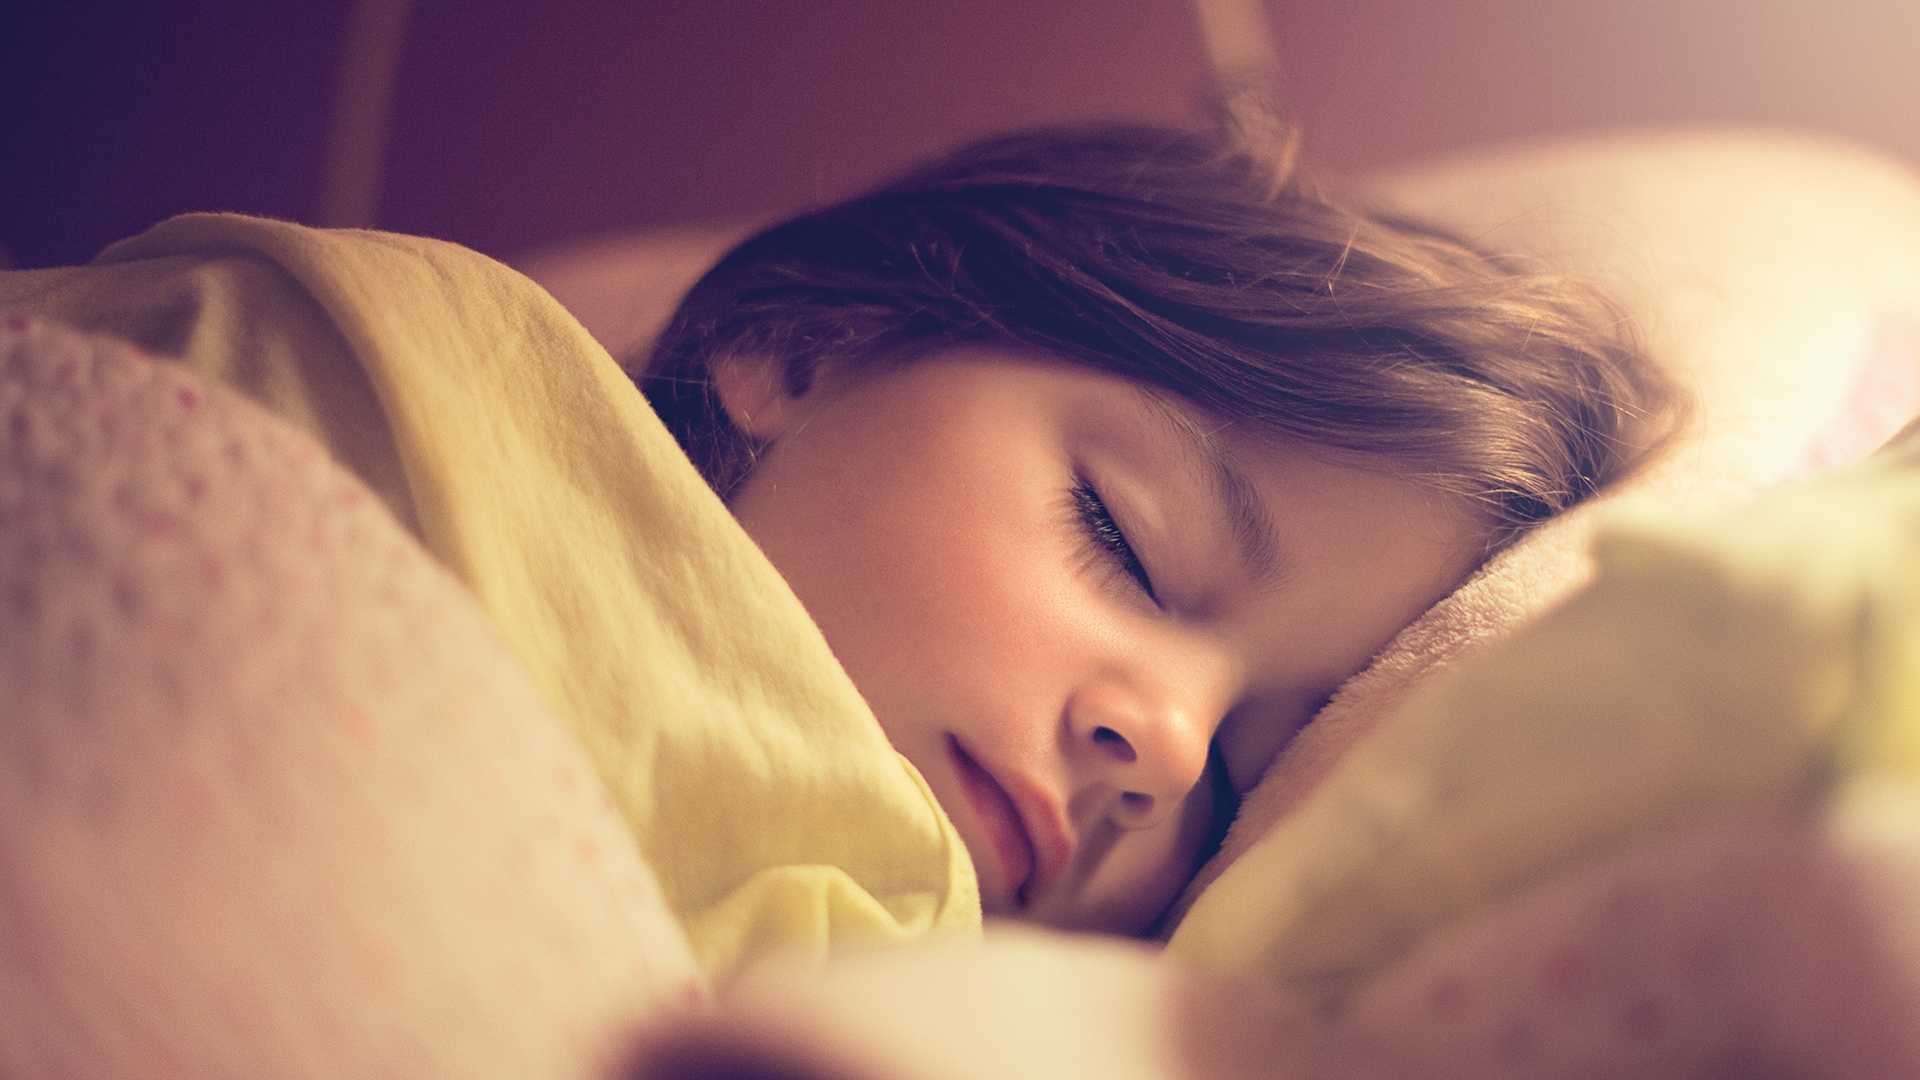 Dormir de manera insuficiente puede afectar la liberación de las hormonas que ayudan a crear masa muscular, combatir infecciones y reparar células. Además, en los niños puede hacer que no liberen suficientes hormonas del crecimiento (Getty Images)